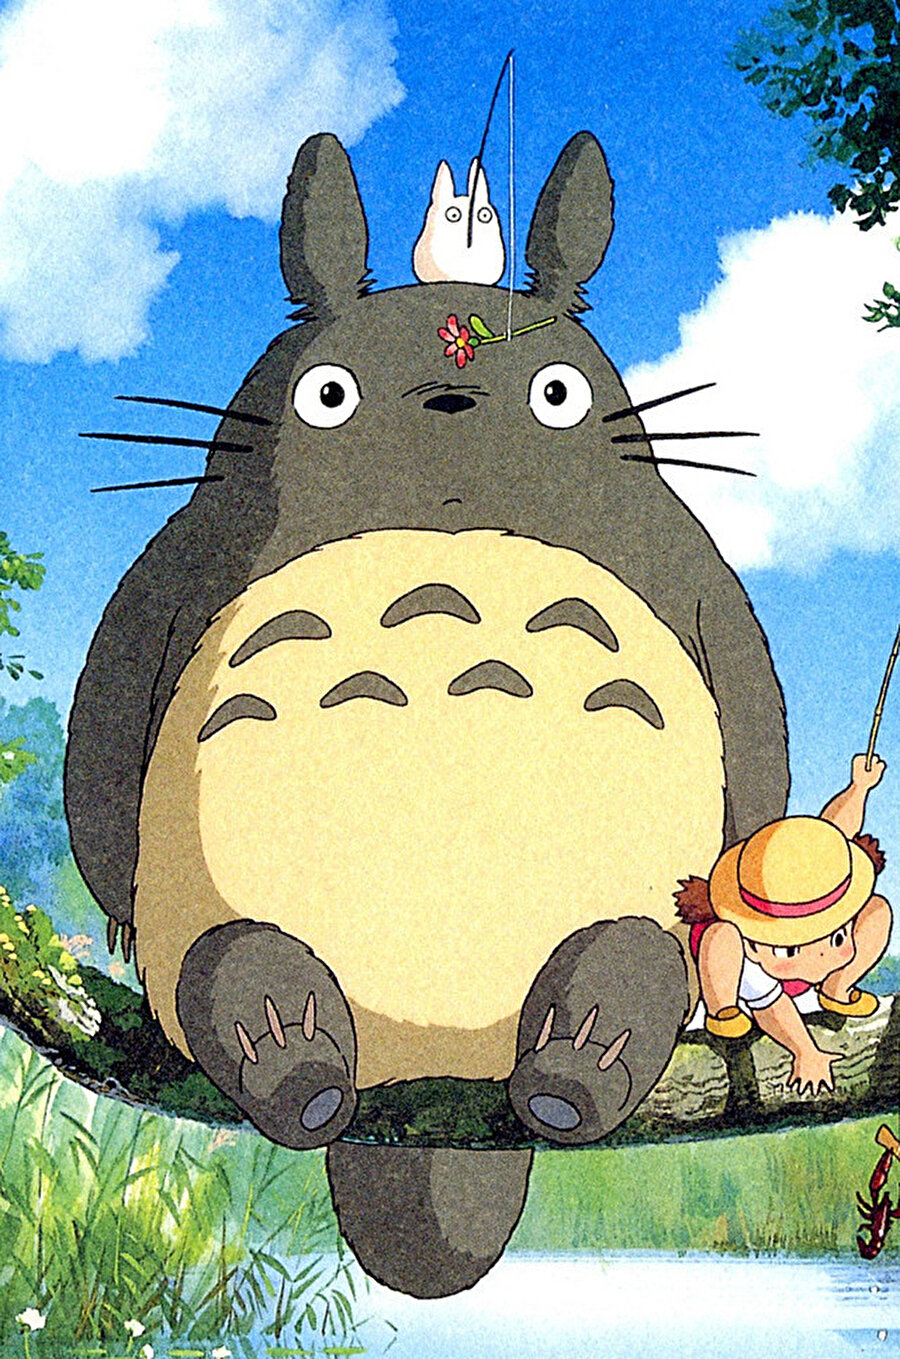 Komşum Totoro da günümüzde halen tazeliğini koruyan bir anime.